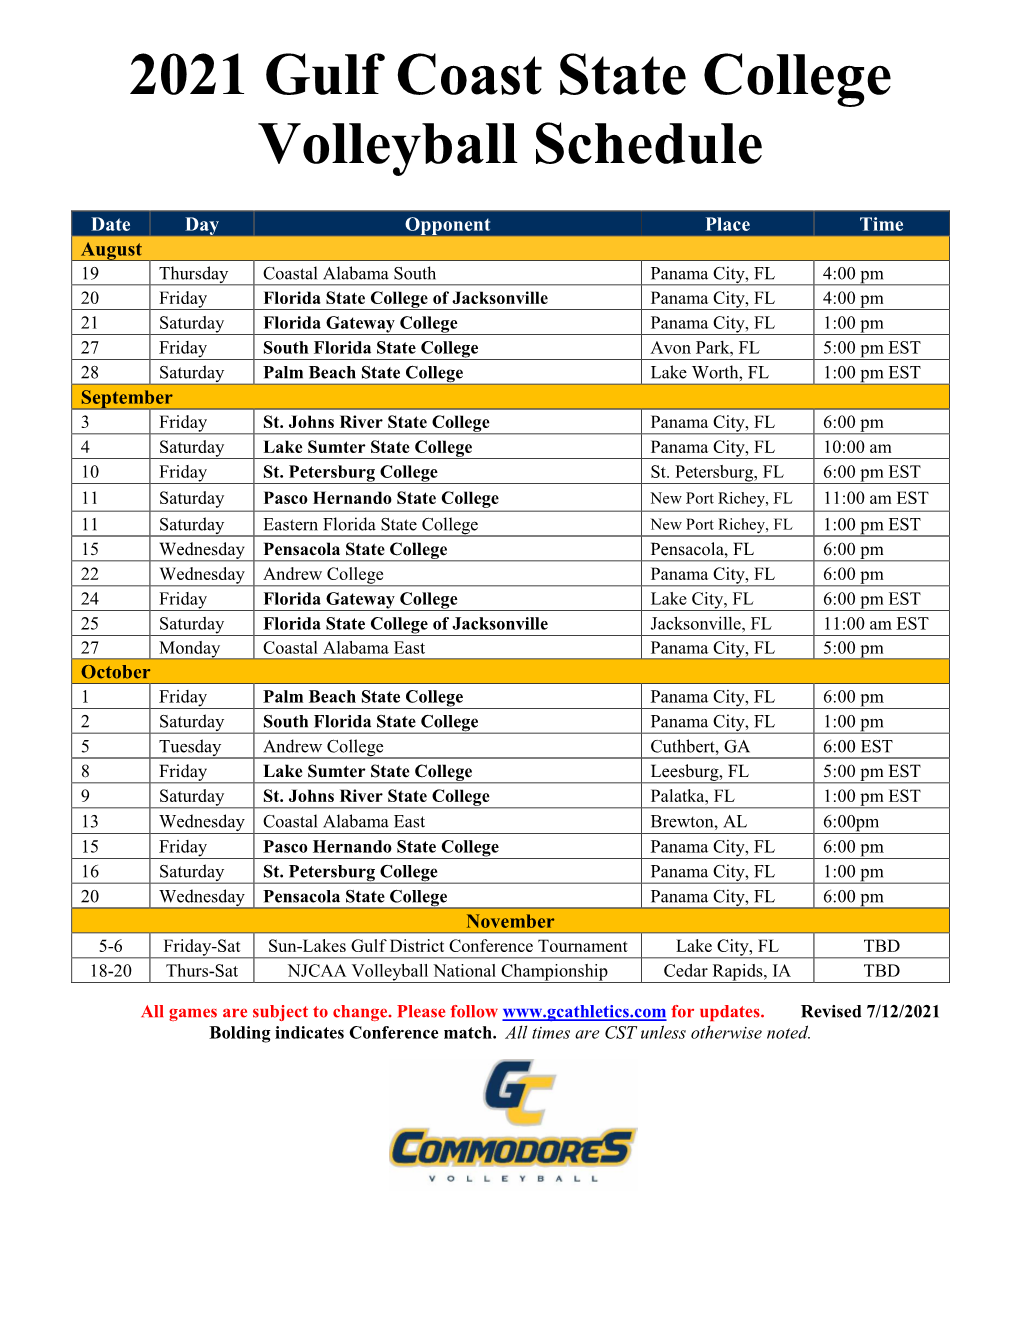 2021 Gulf Coast State College Volleyball Schedule